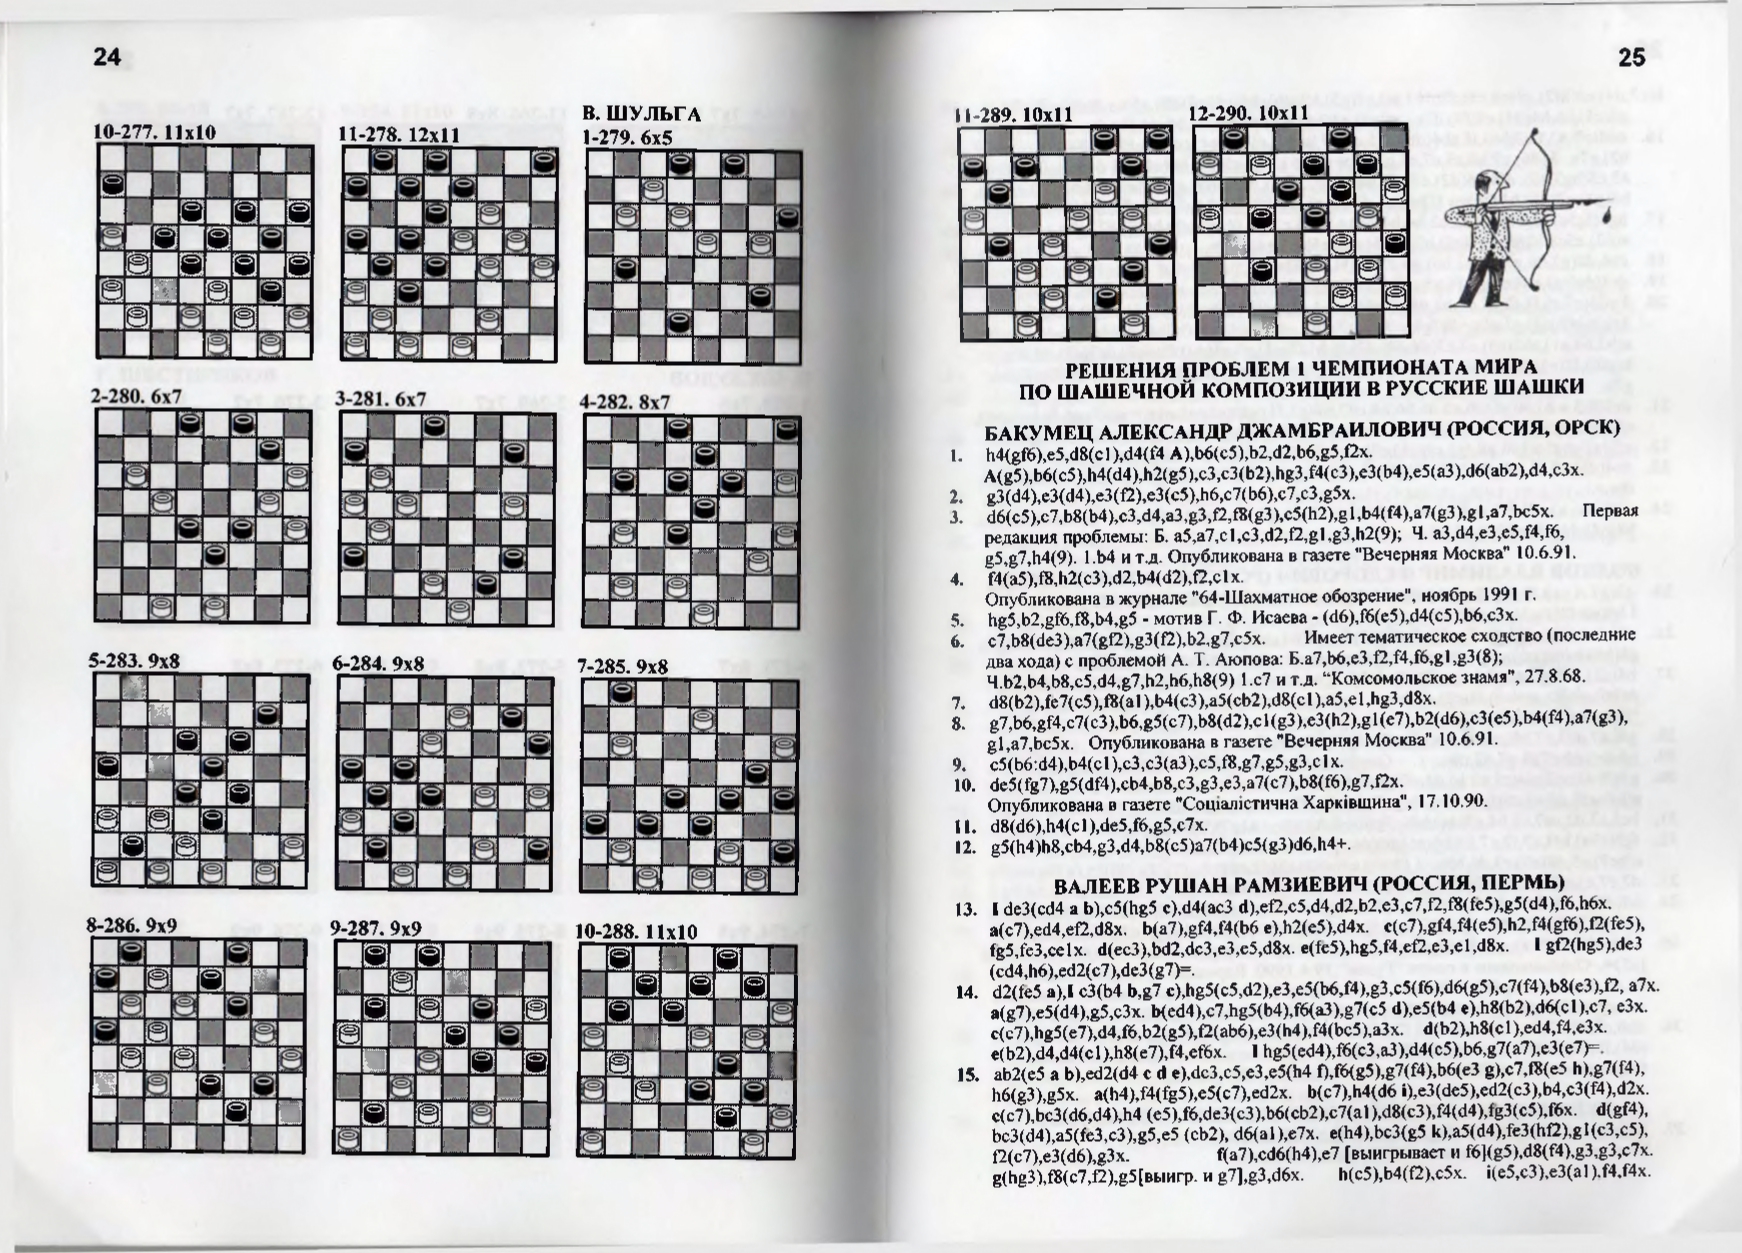 Gorin-Chempionat_mira_po_shashechnoy_kompozitsii_1994-339_page-0014.jpg